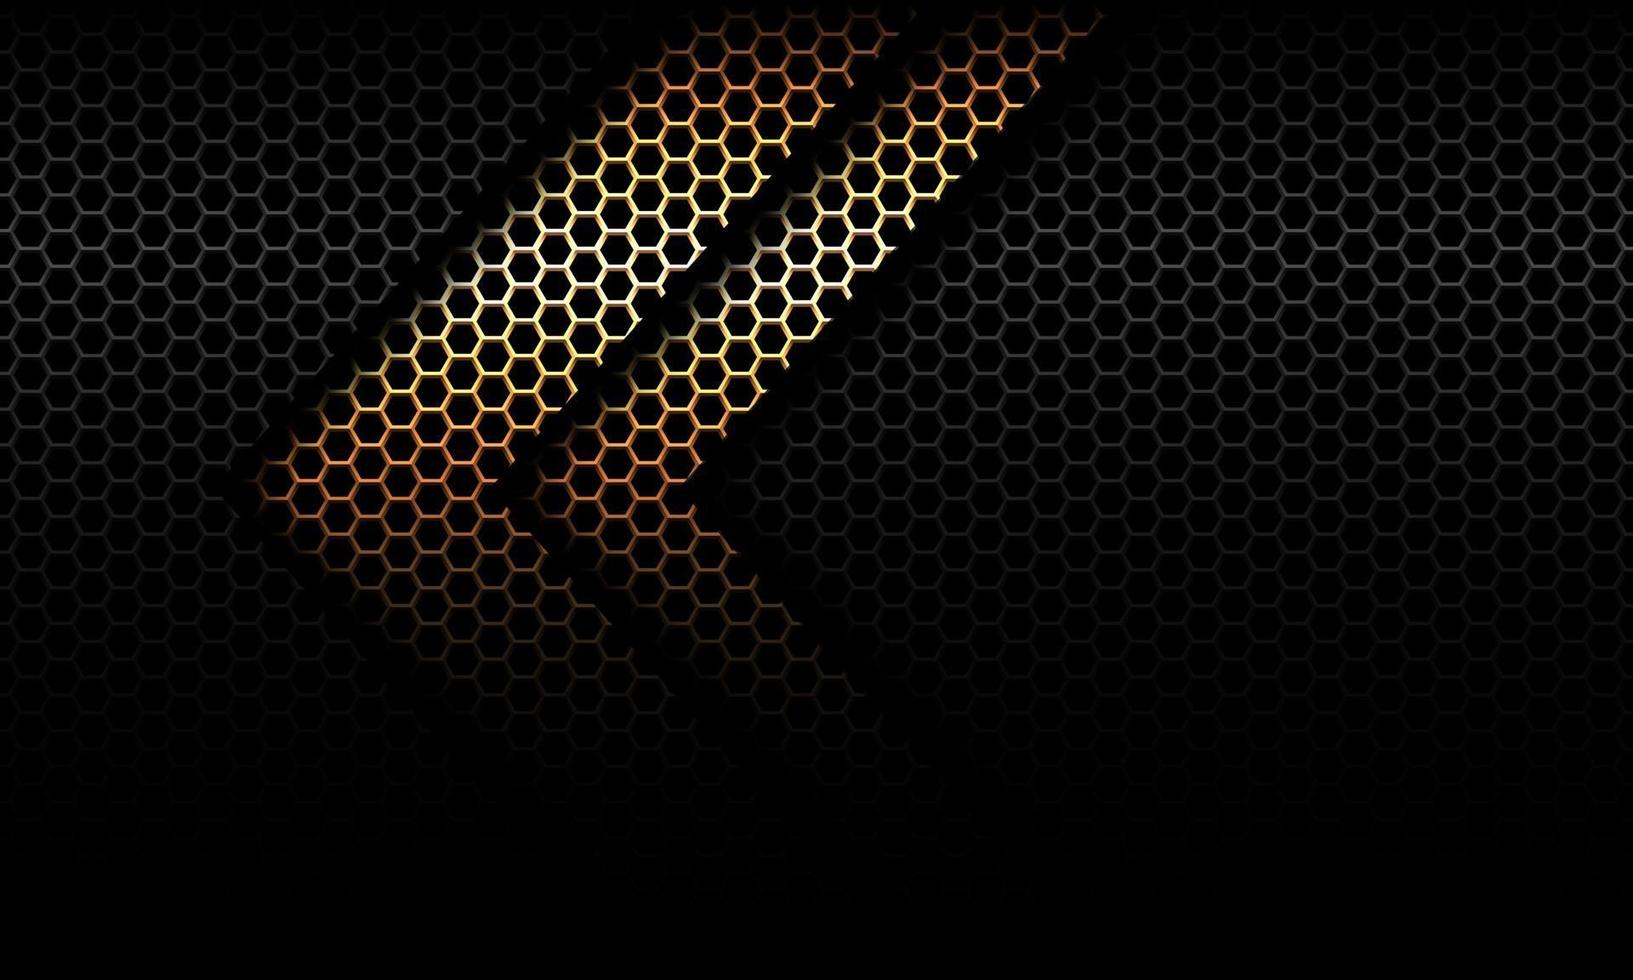 direction de l'ombre flèche dorée abstraite sur maille hexagonale noire conception illustration vectorielle de fond futuriste moderne. vecteur